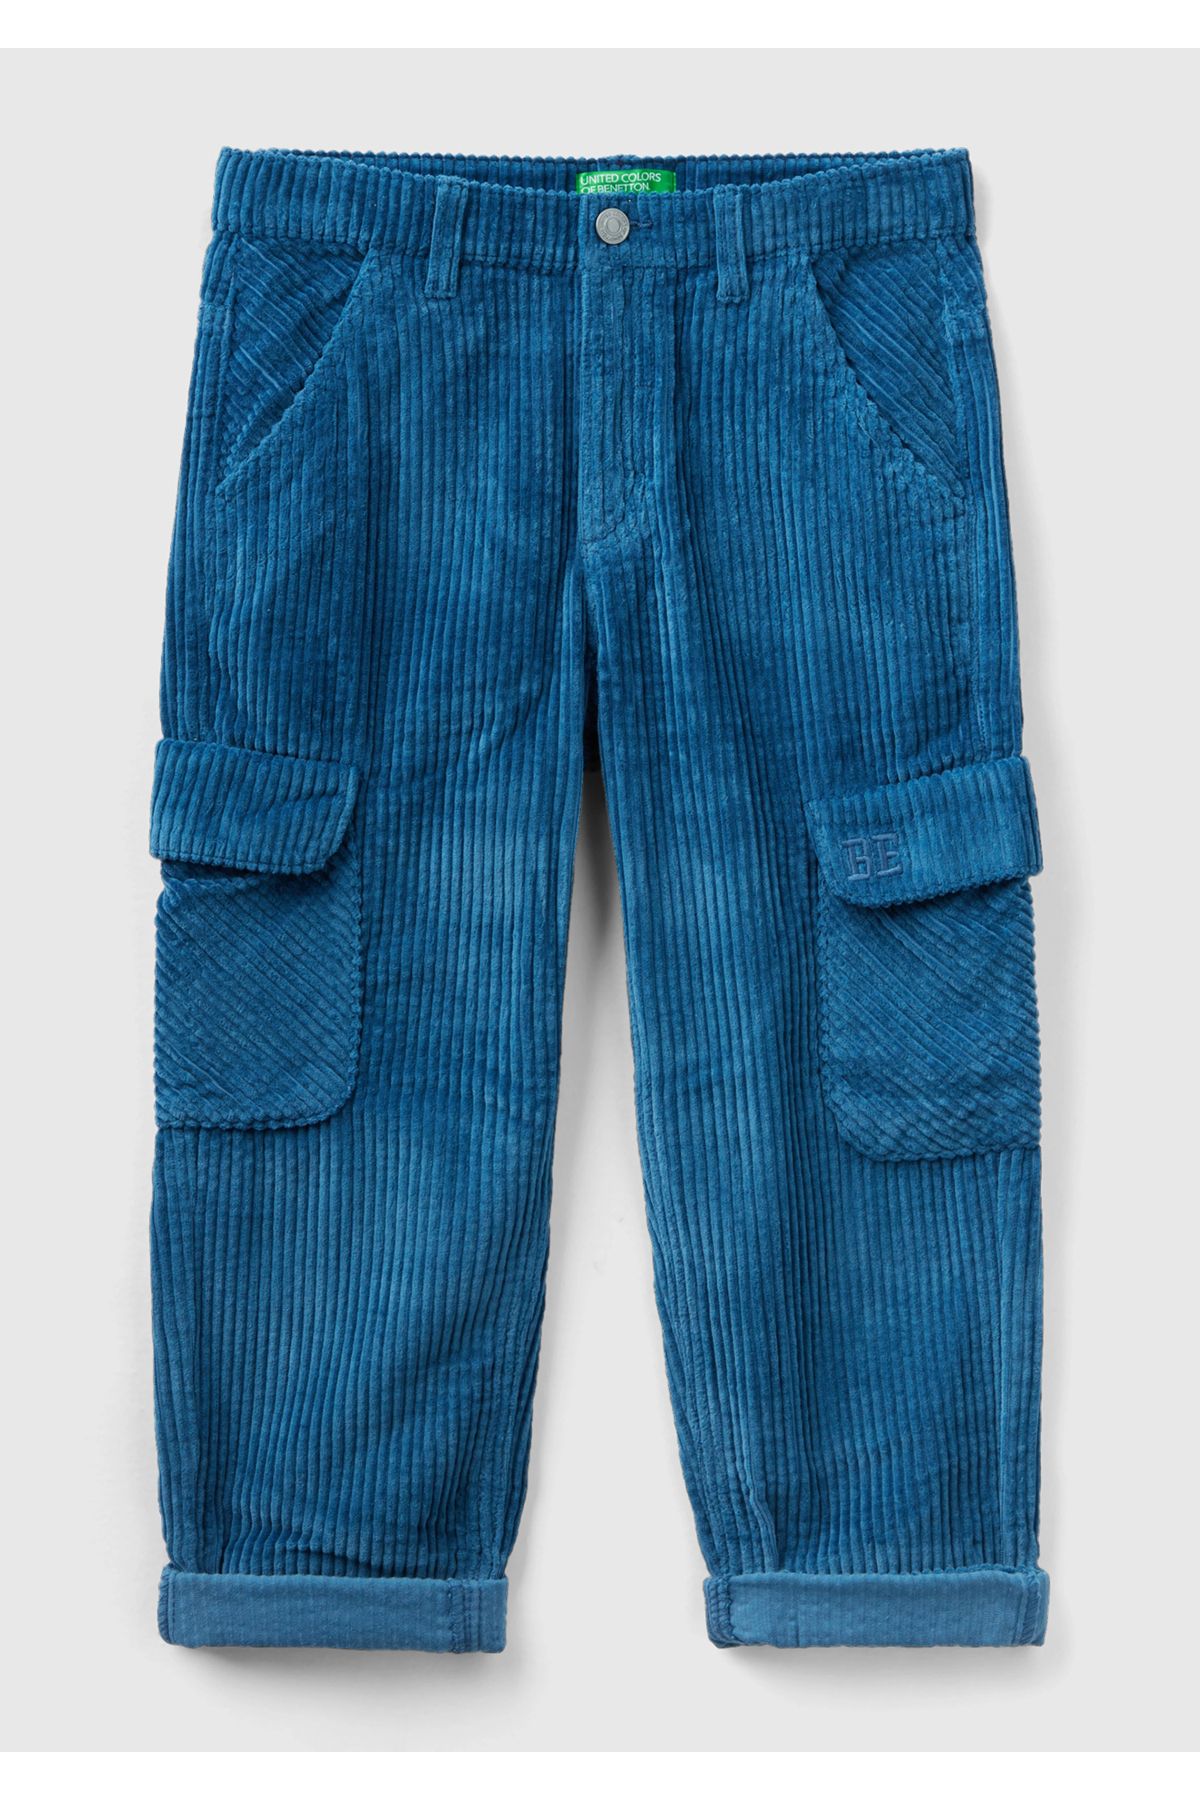 United Colors of Benetton Erkek Çocuk Indigo BE İşlemeli Kargo Cepli Kadife Pantolon